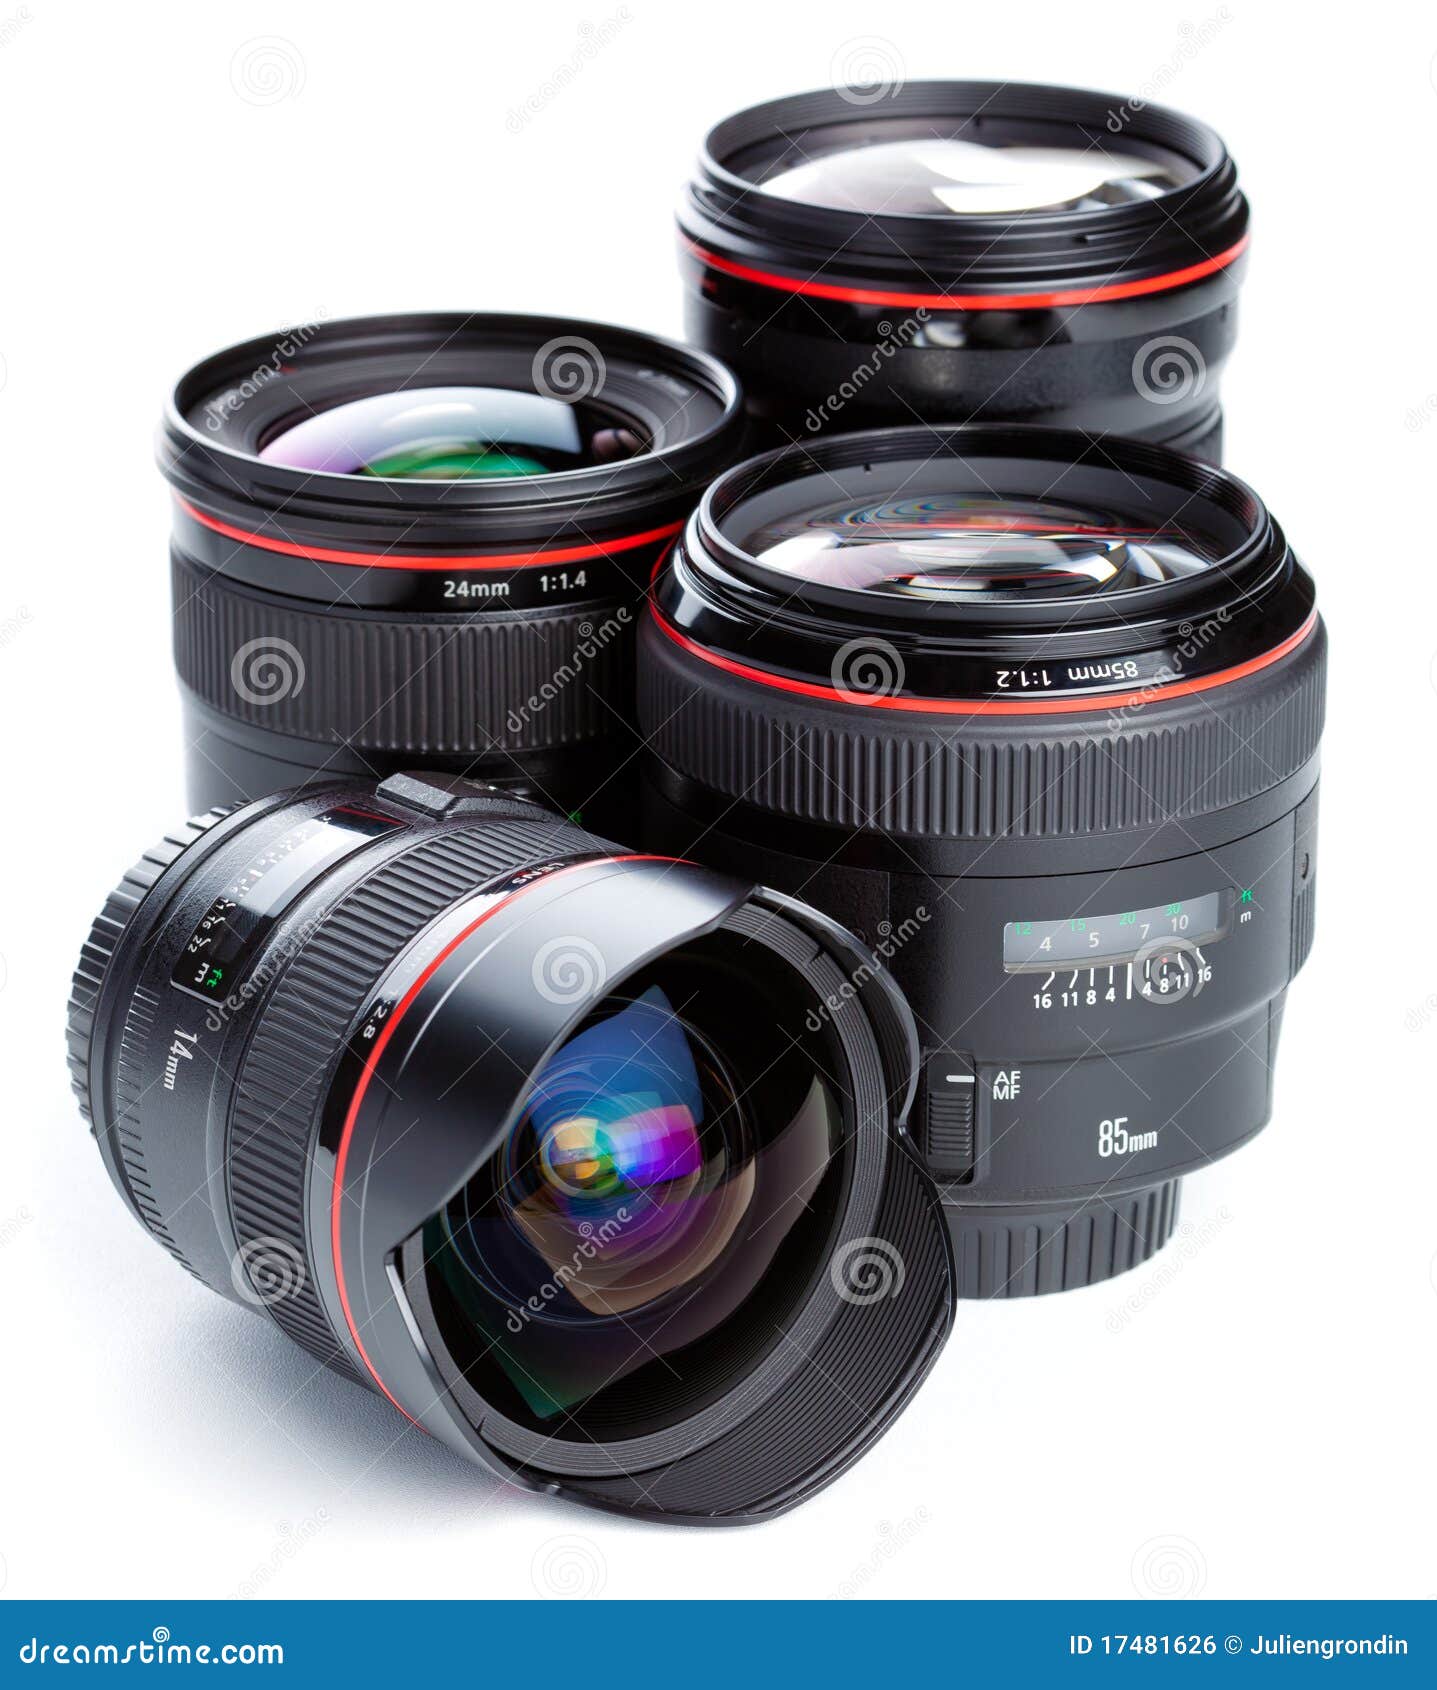 photographic lenses